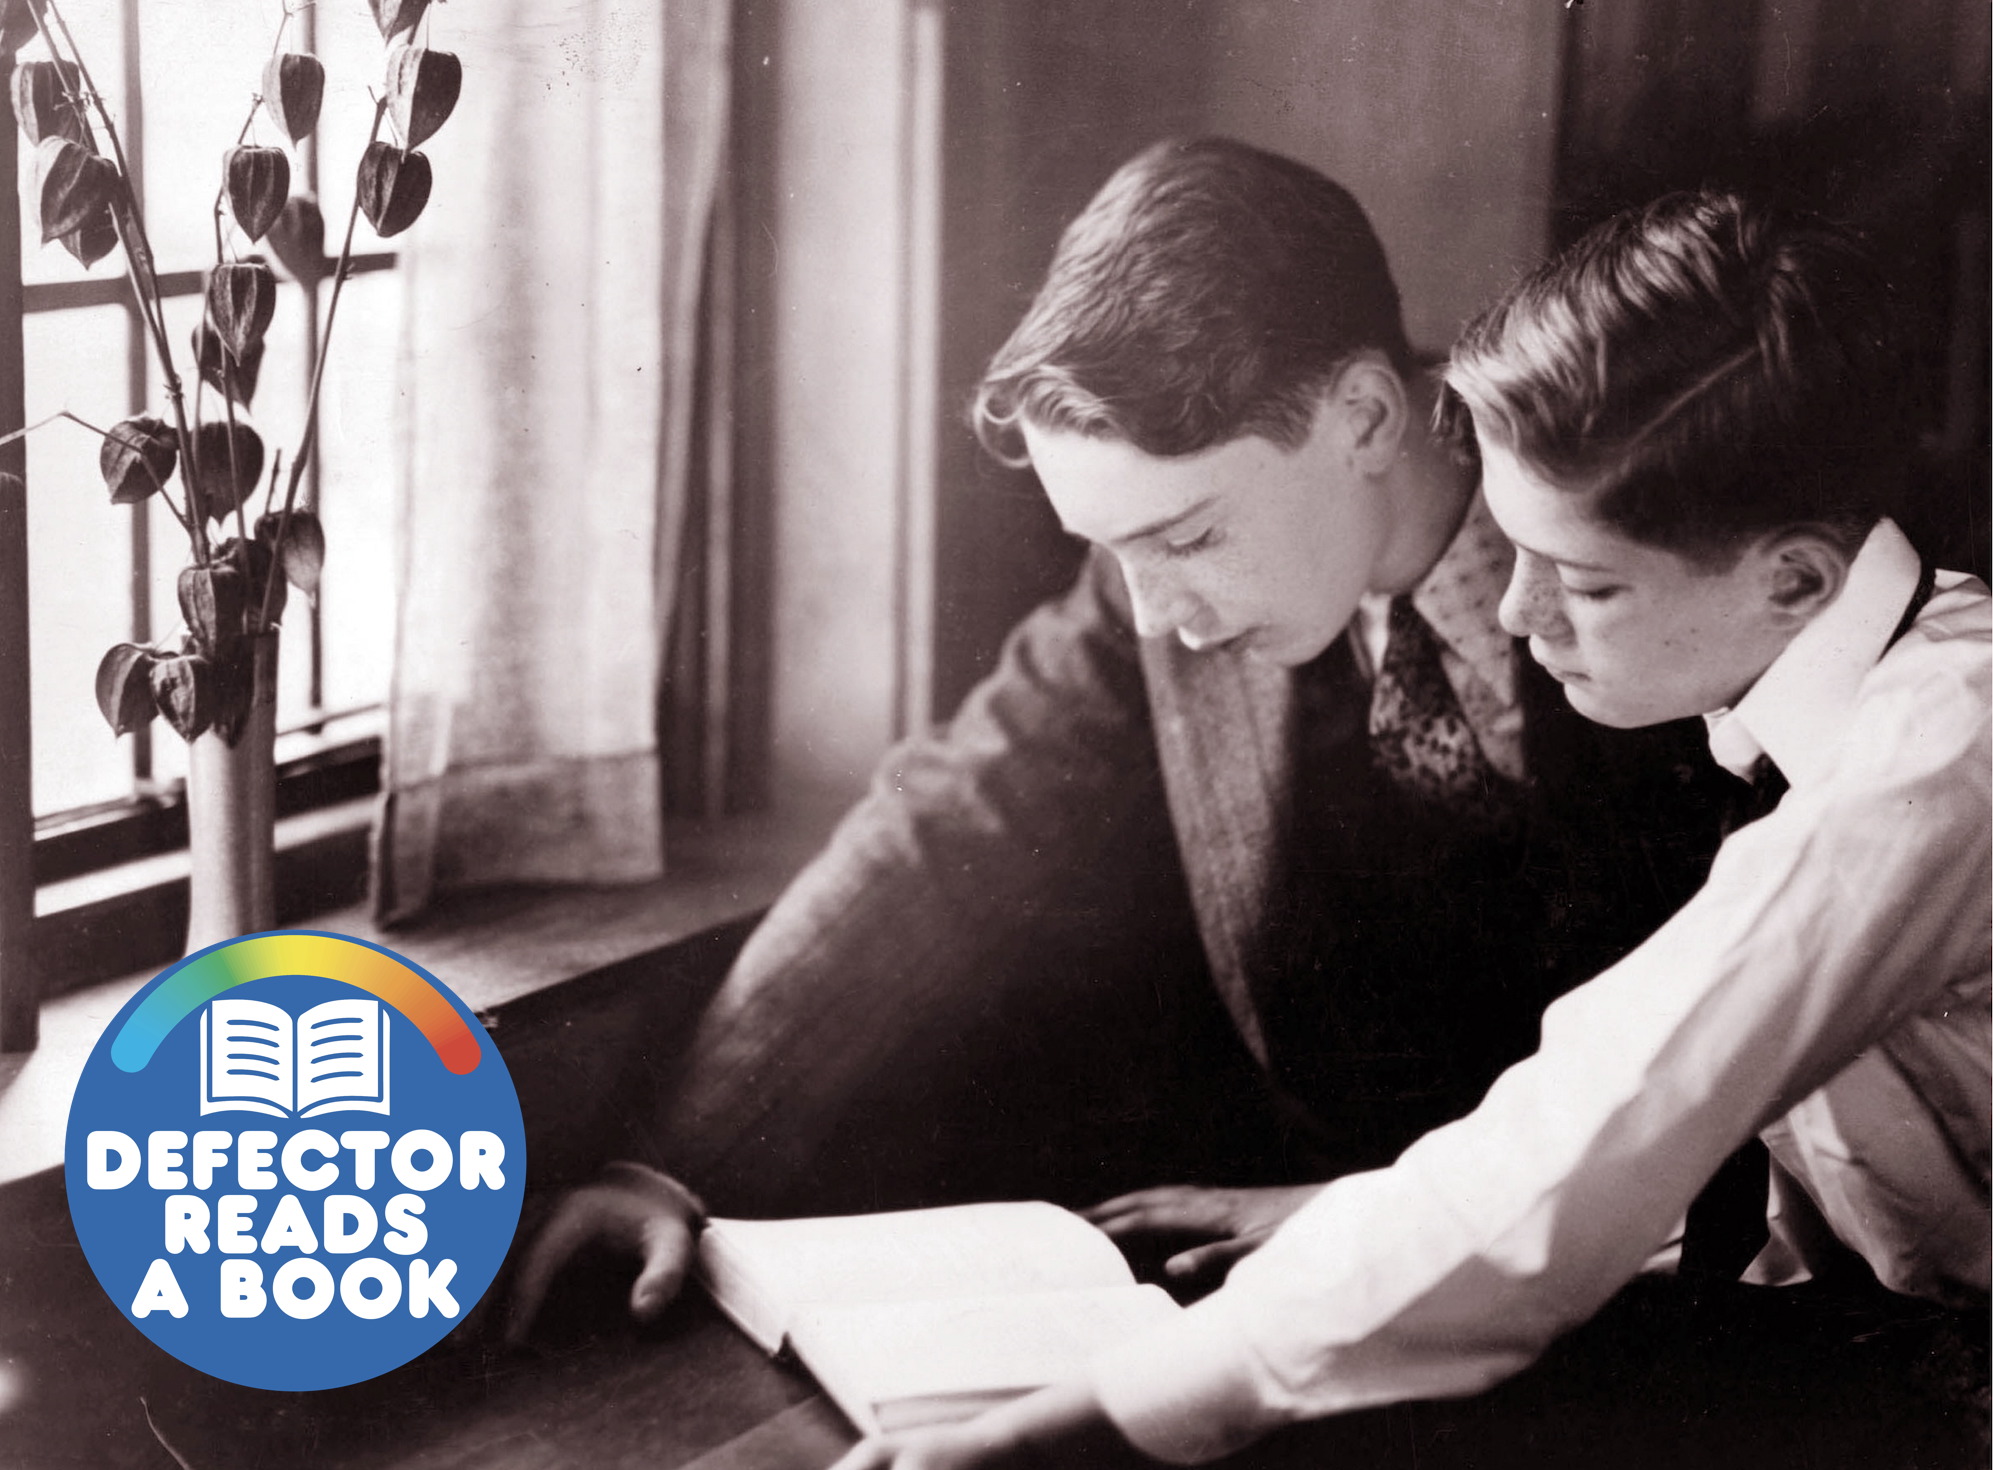 Two boys read a book in Brooklyn, 1915